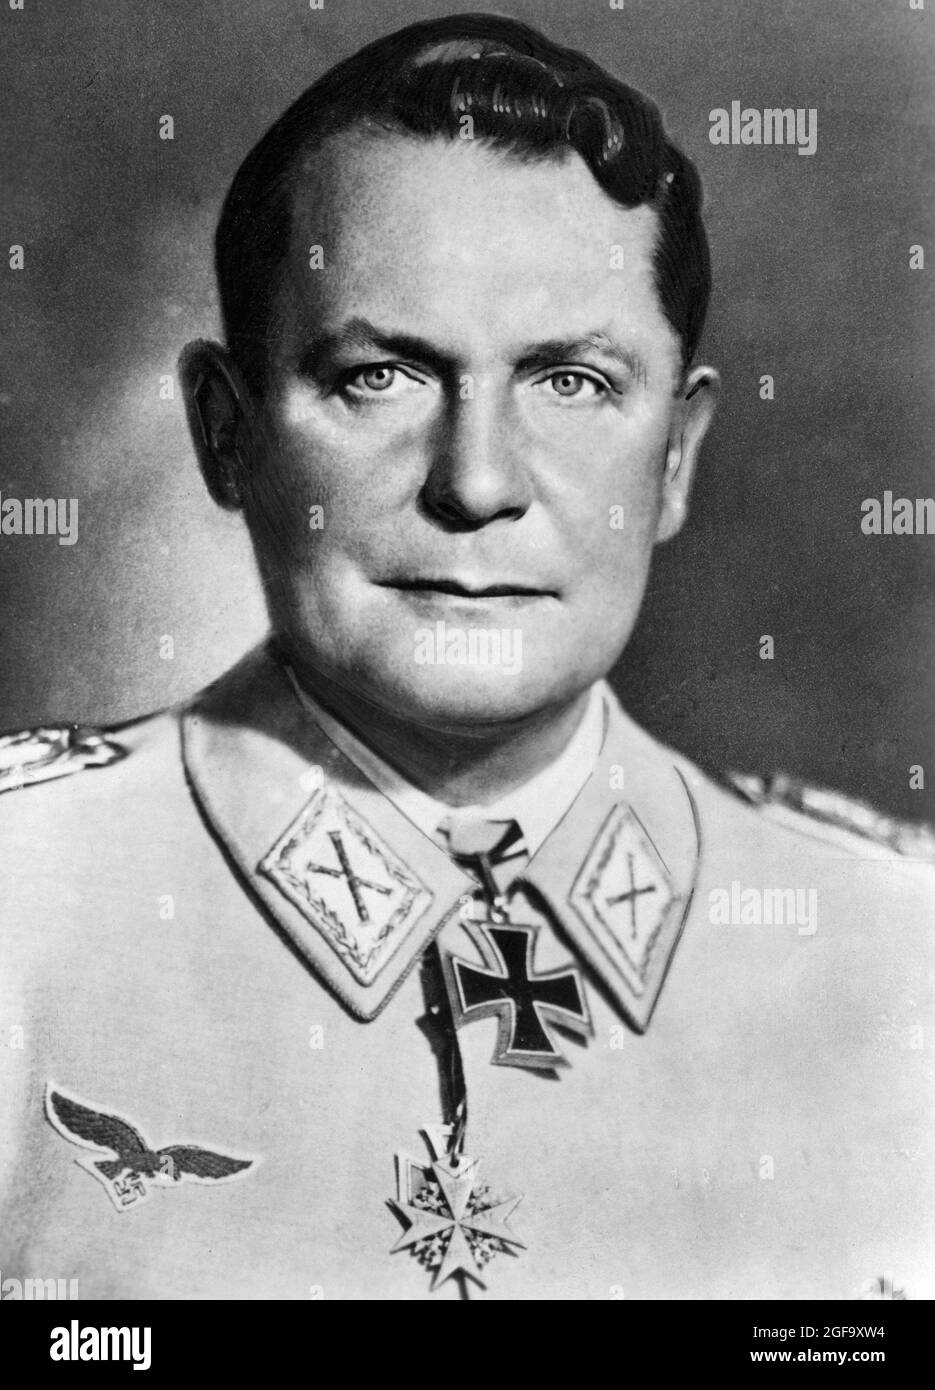 Ein Porträt des Nazi-Chefs der Luftwaffe Germann Göring aus dem Jahr 1945. Er wurde 1945 gefangen genommen, 1946 in Nürnberg zum Tode verurteilt. Er beging Selbstmord Stunden, bevor er gehängt werden sollte. Stockfoto